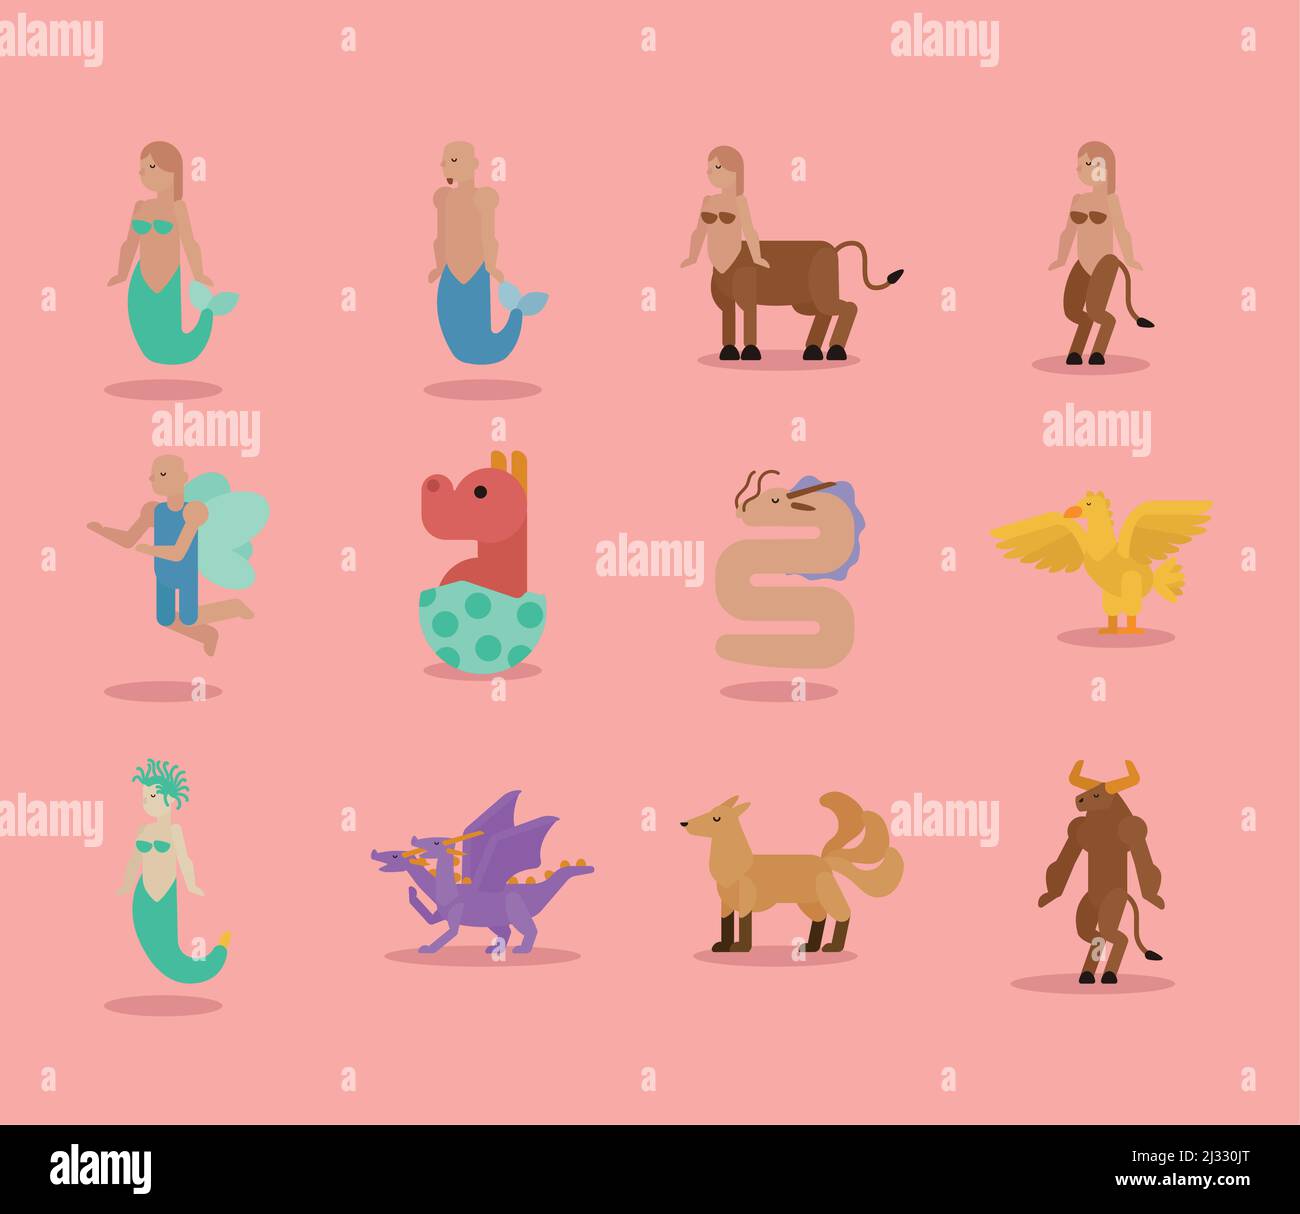 twelve fantastic creatures characters Stock Vector